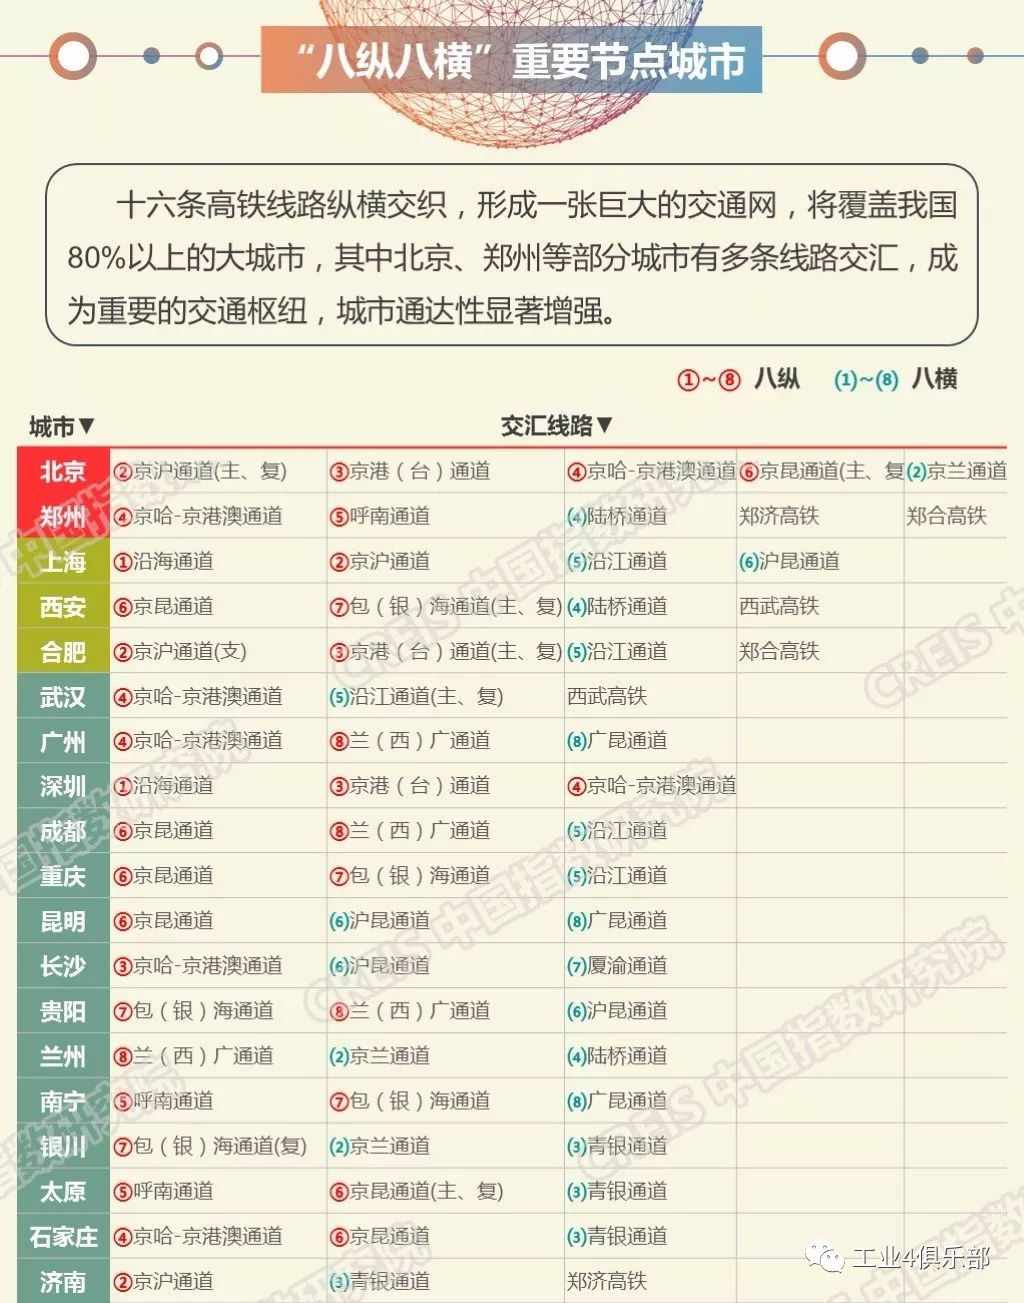 中国高铁的巨变_中国高铁的发展历程